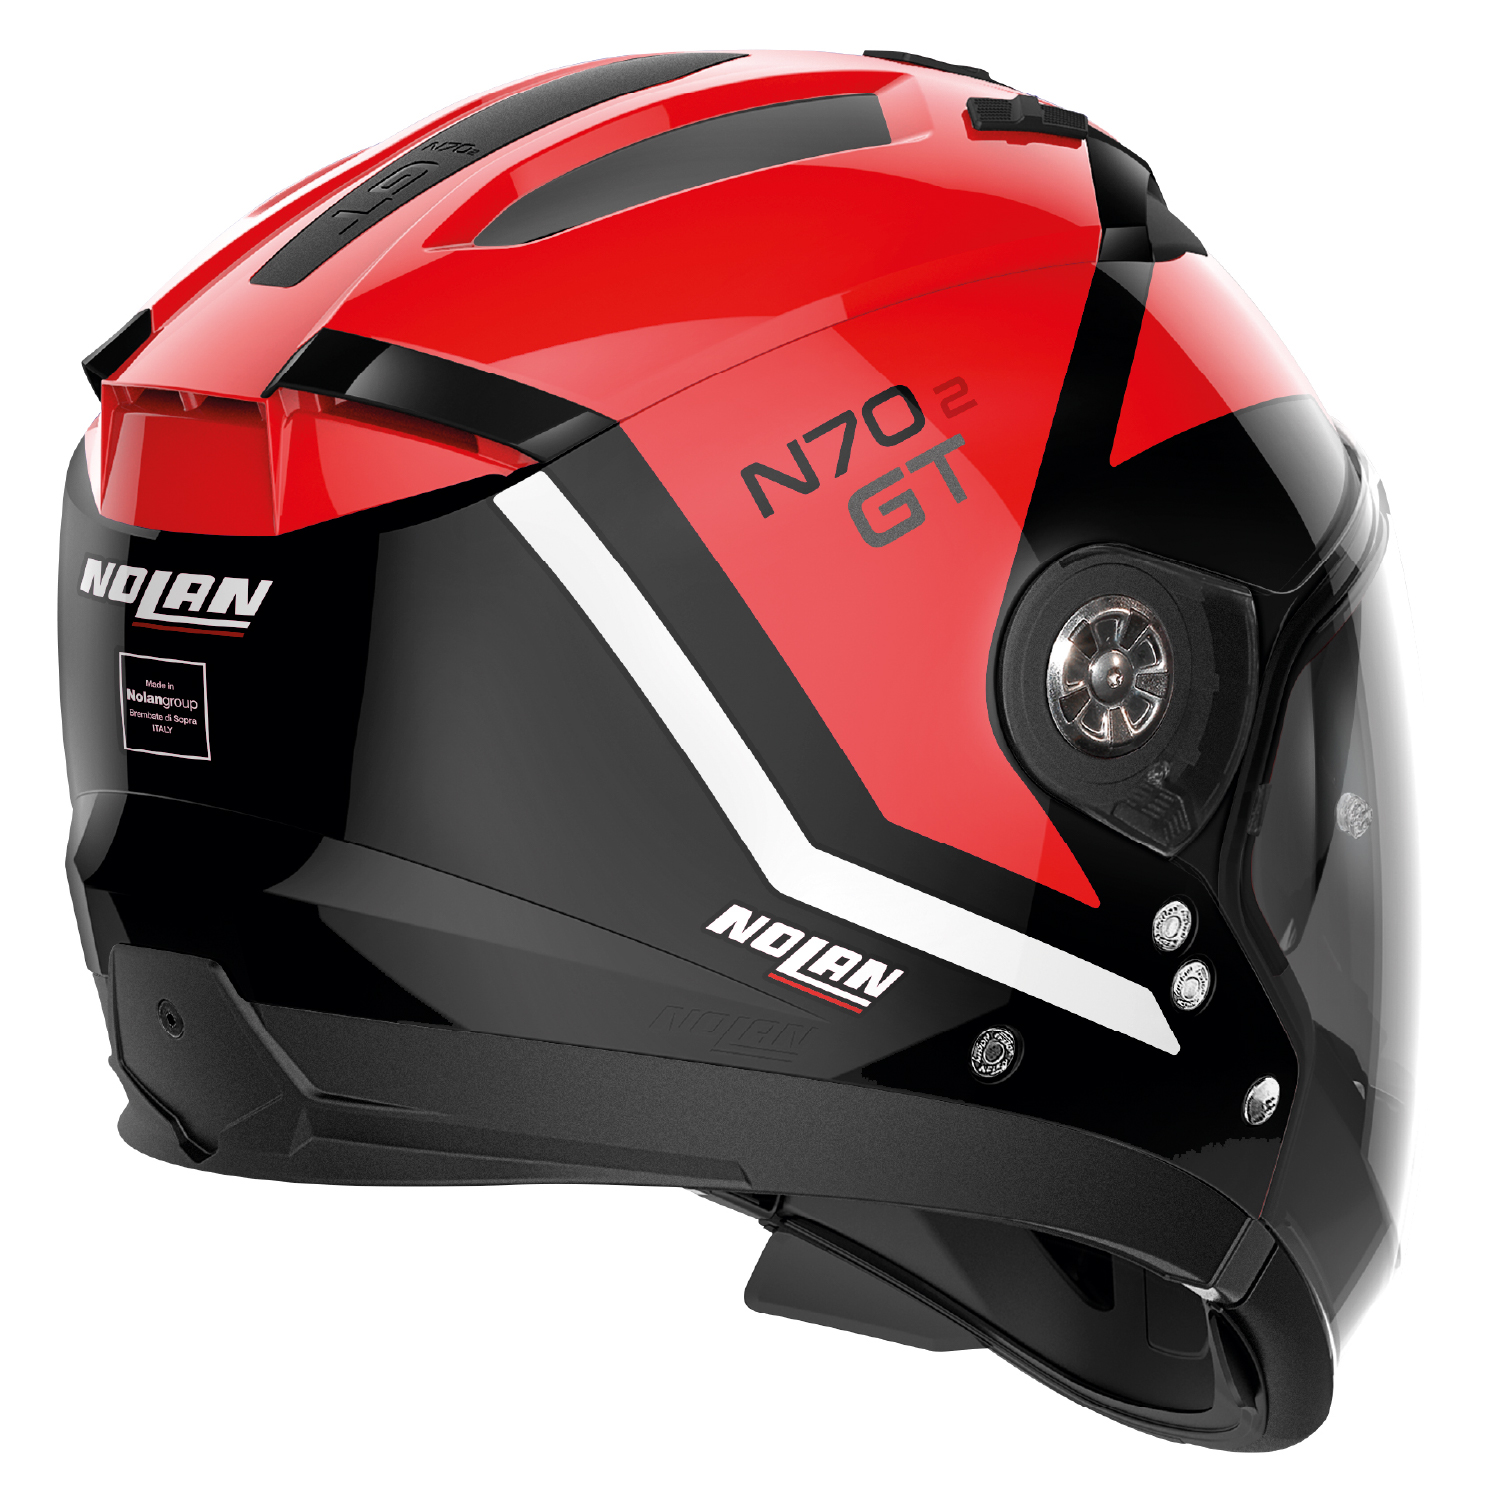 NOLAN(ノーラン) バイク用ヘルメット オフロード N70-2X トーピード